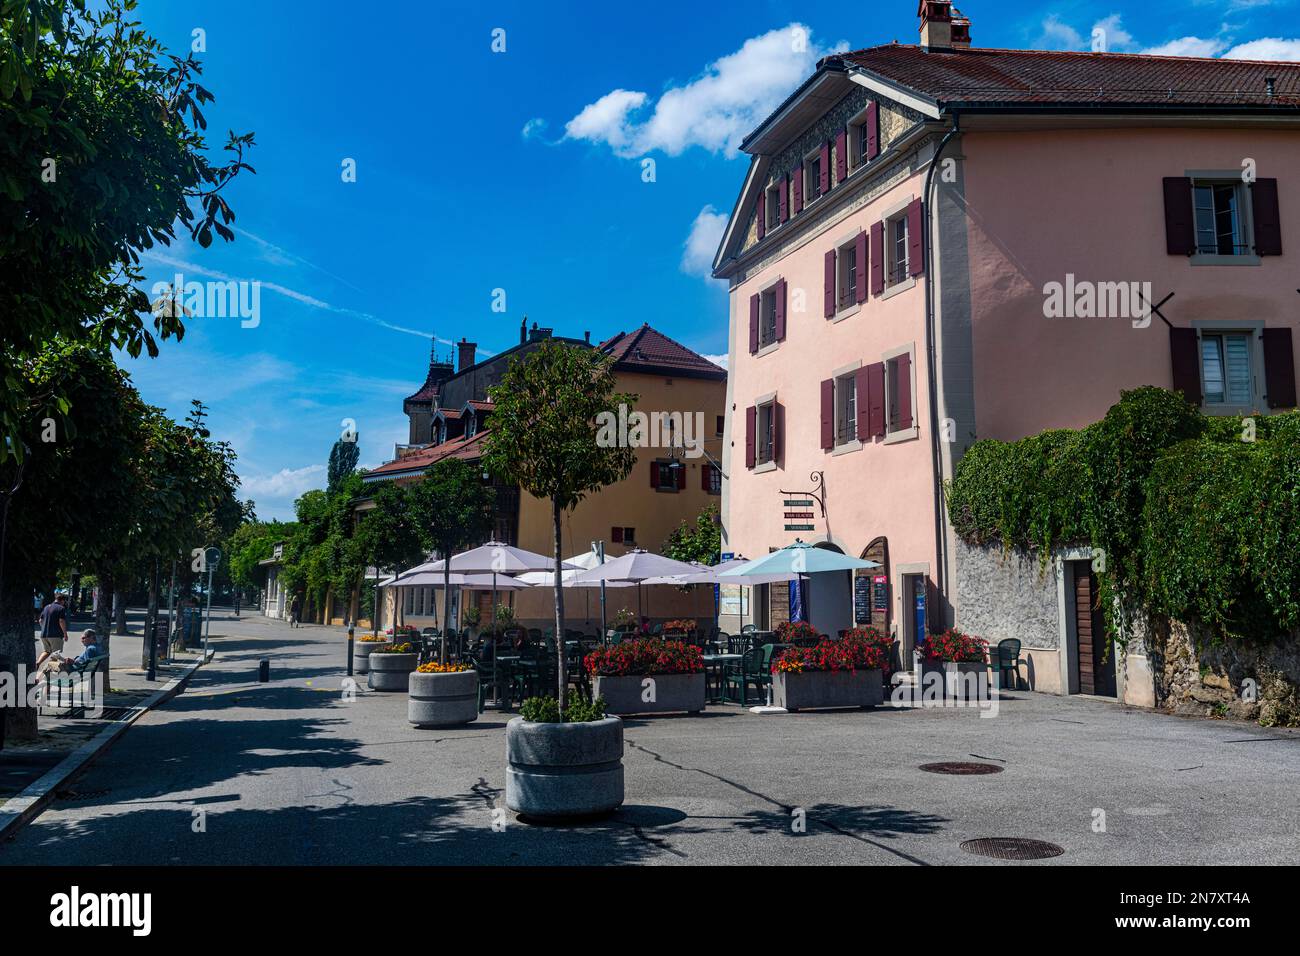 Ciudad histórica Lutry en el sitio de la UNESCO Lavaux viñedos terrazas, lago de Ginebra, Suiza Foto de stock